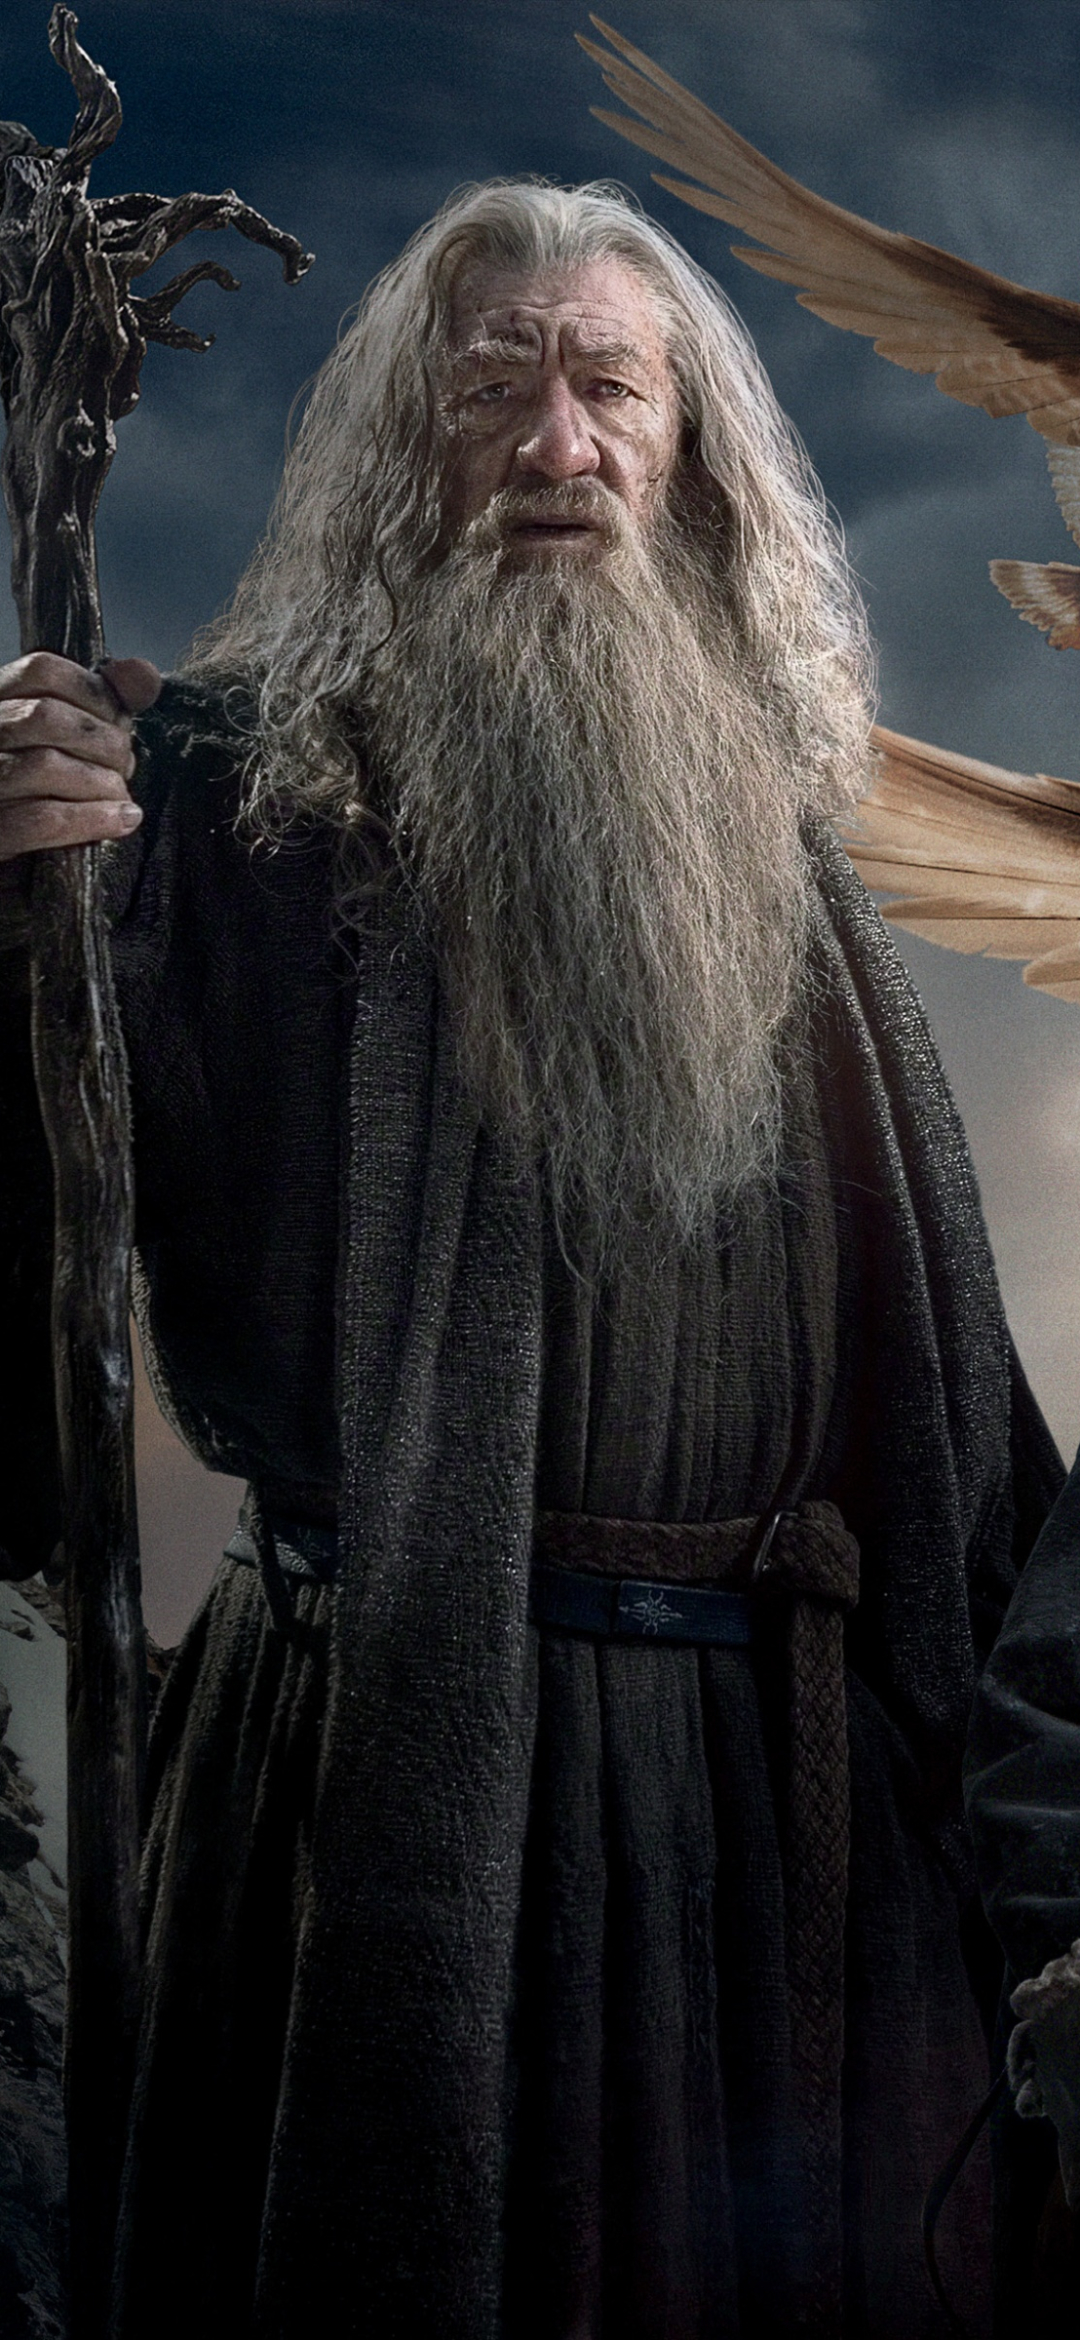 Descarga gratuita de fondo de pantalla para móvil de El Señor De Los Anillos, Barba, Películas, Gandalf, Señor De Los Anillos, El Hobbit: La Batalla De Los Cinco Ejércitos.